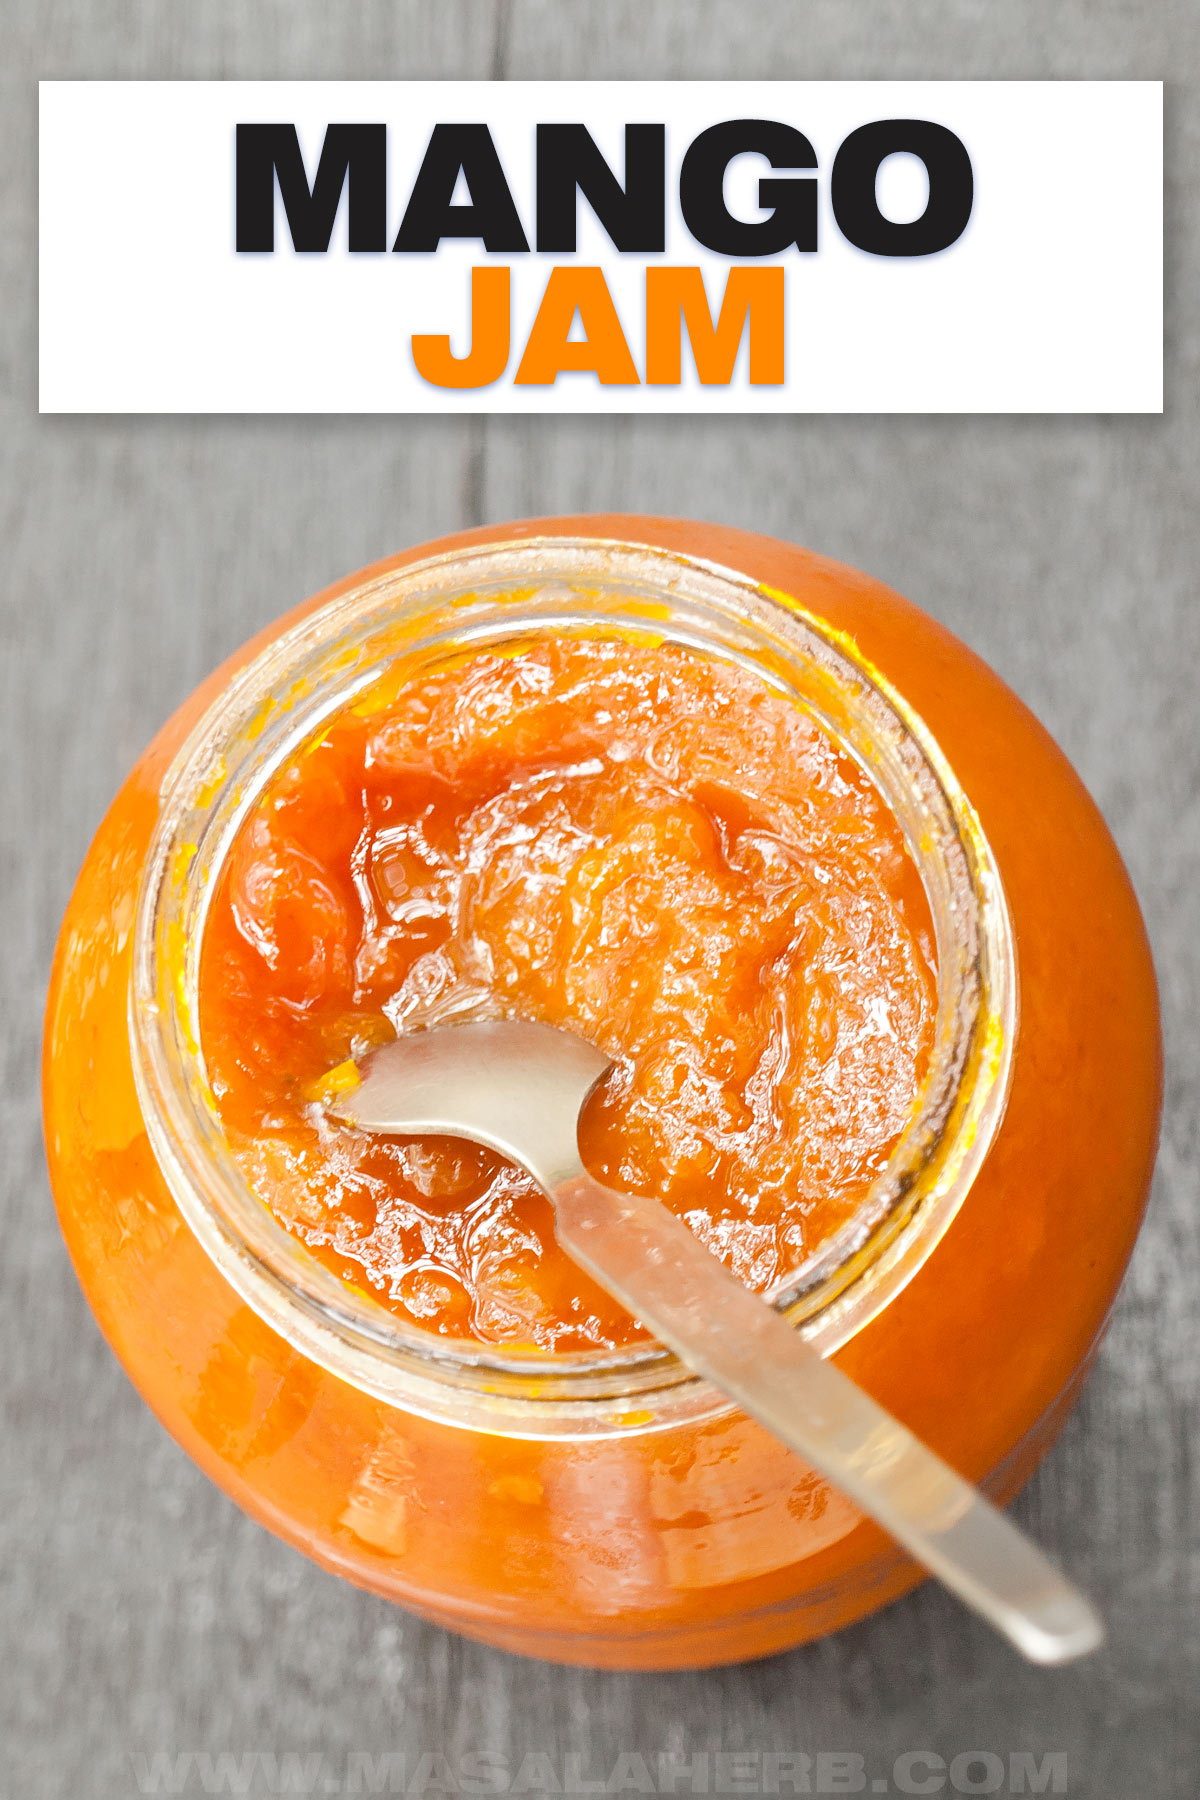 French Mango Jam Recipe cover image